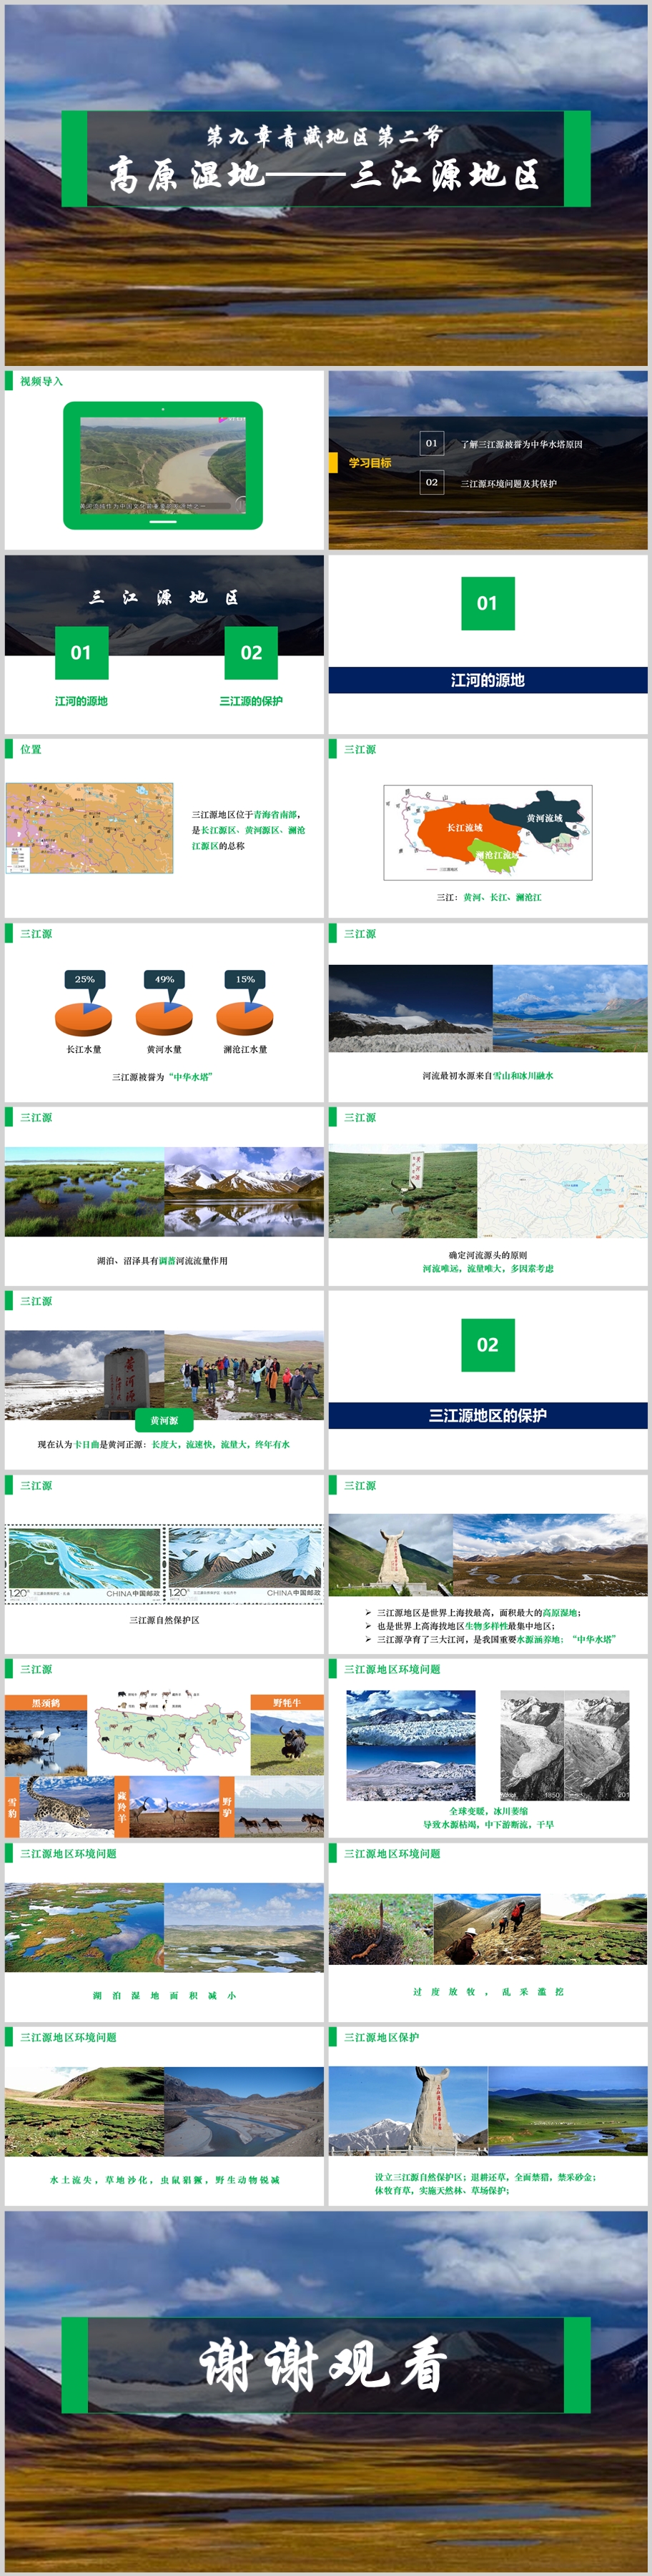 第九章第二节 高原湿地—三江源地区拼图.jpg